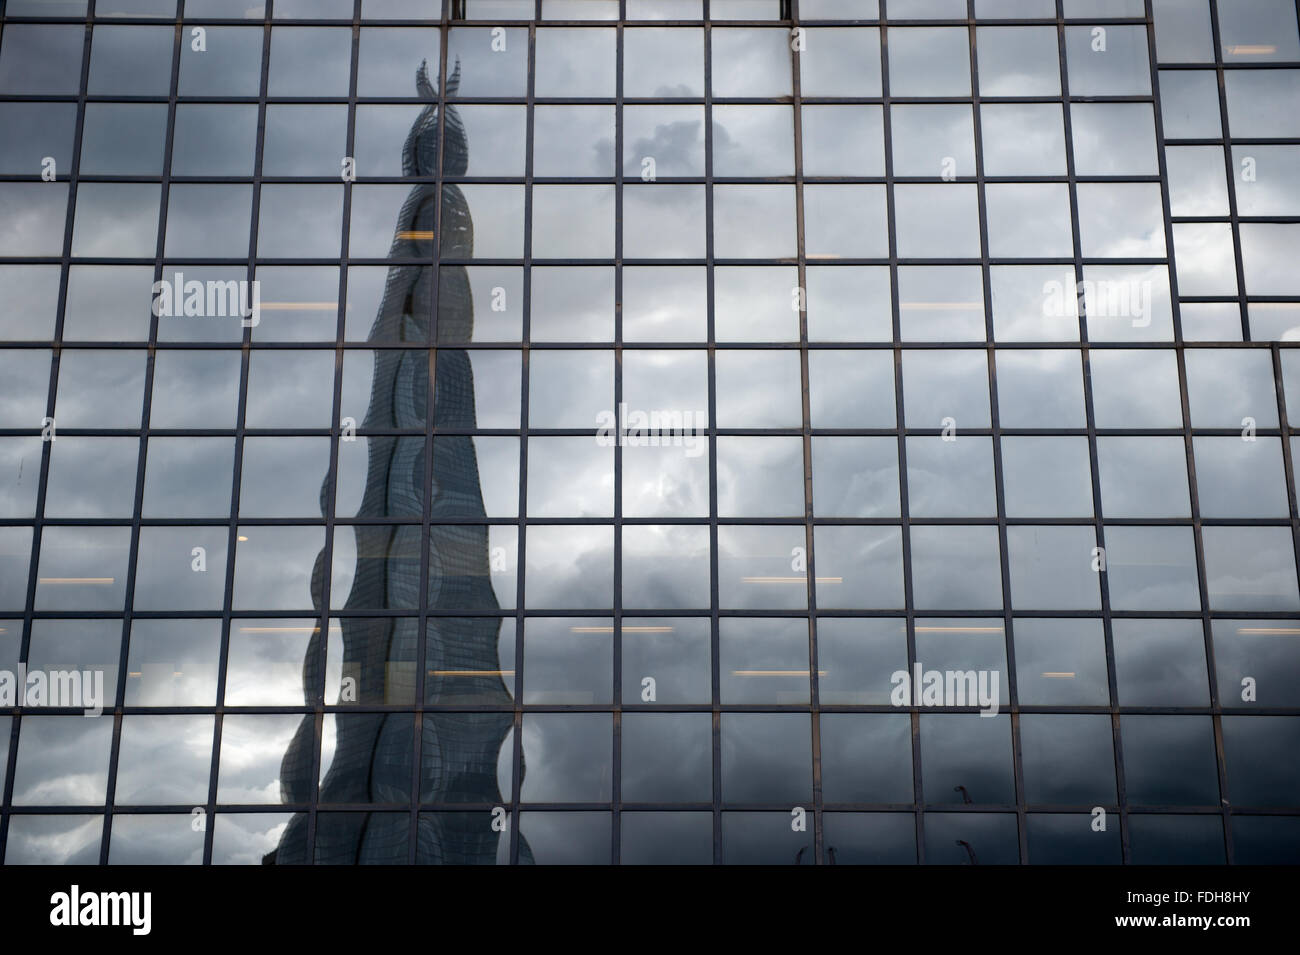 Reflexion von The Shard Wolkenkratzer auf ein Glas Gebäude in London, England. Stockfoto